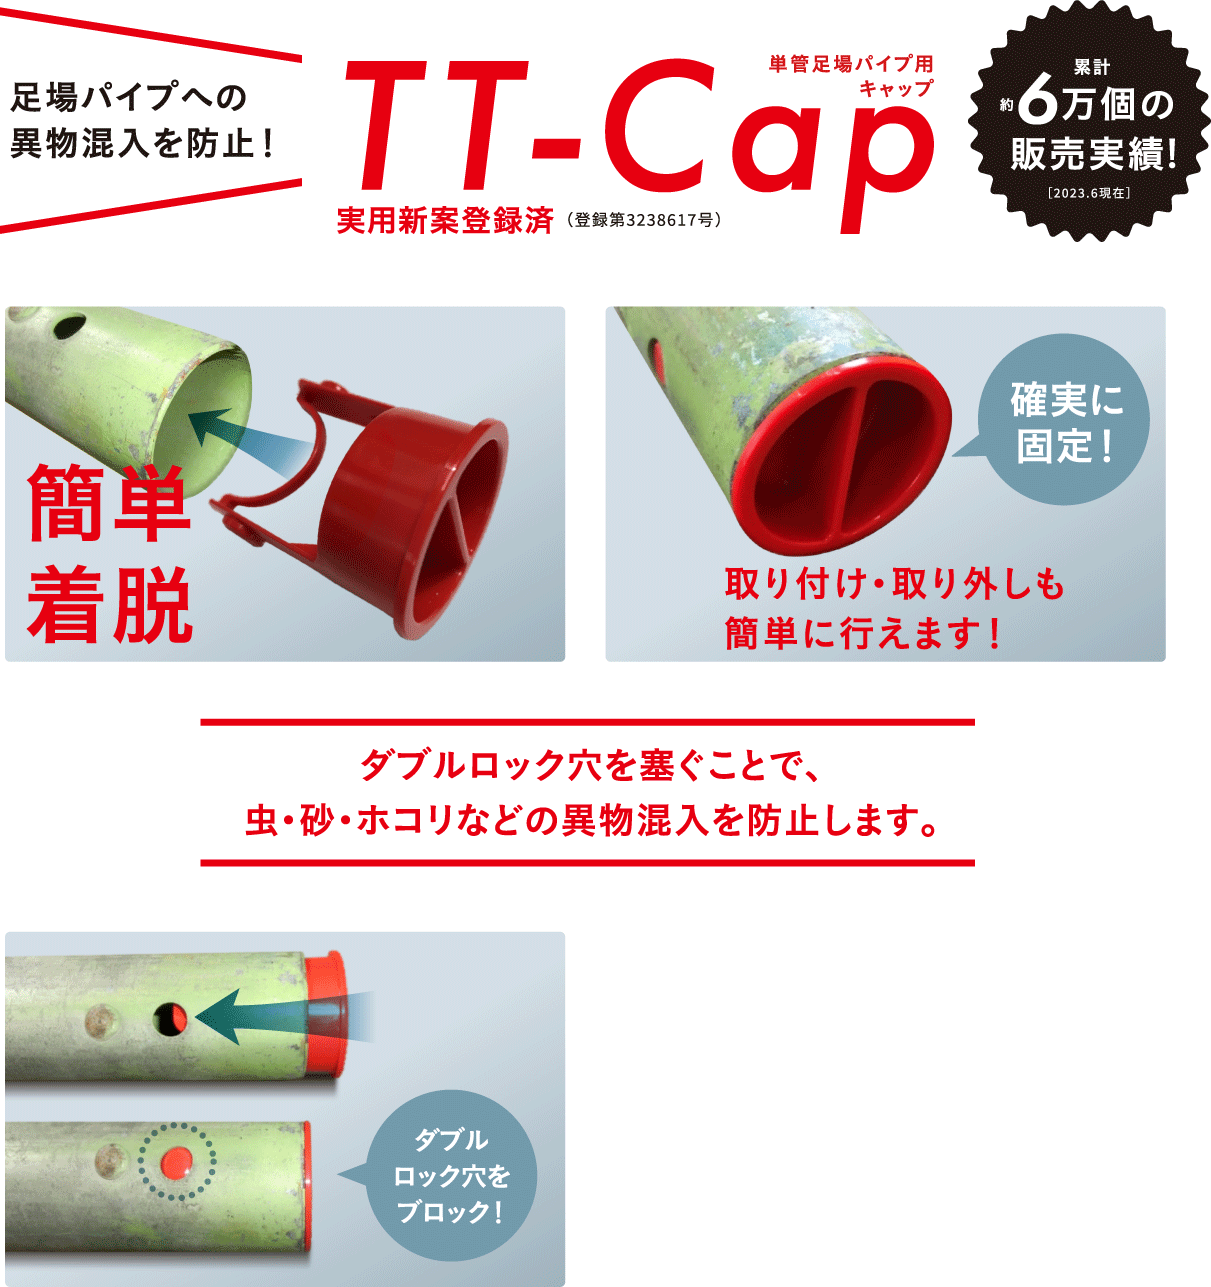 ttcapのパソコン表示用広告